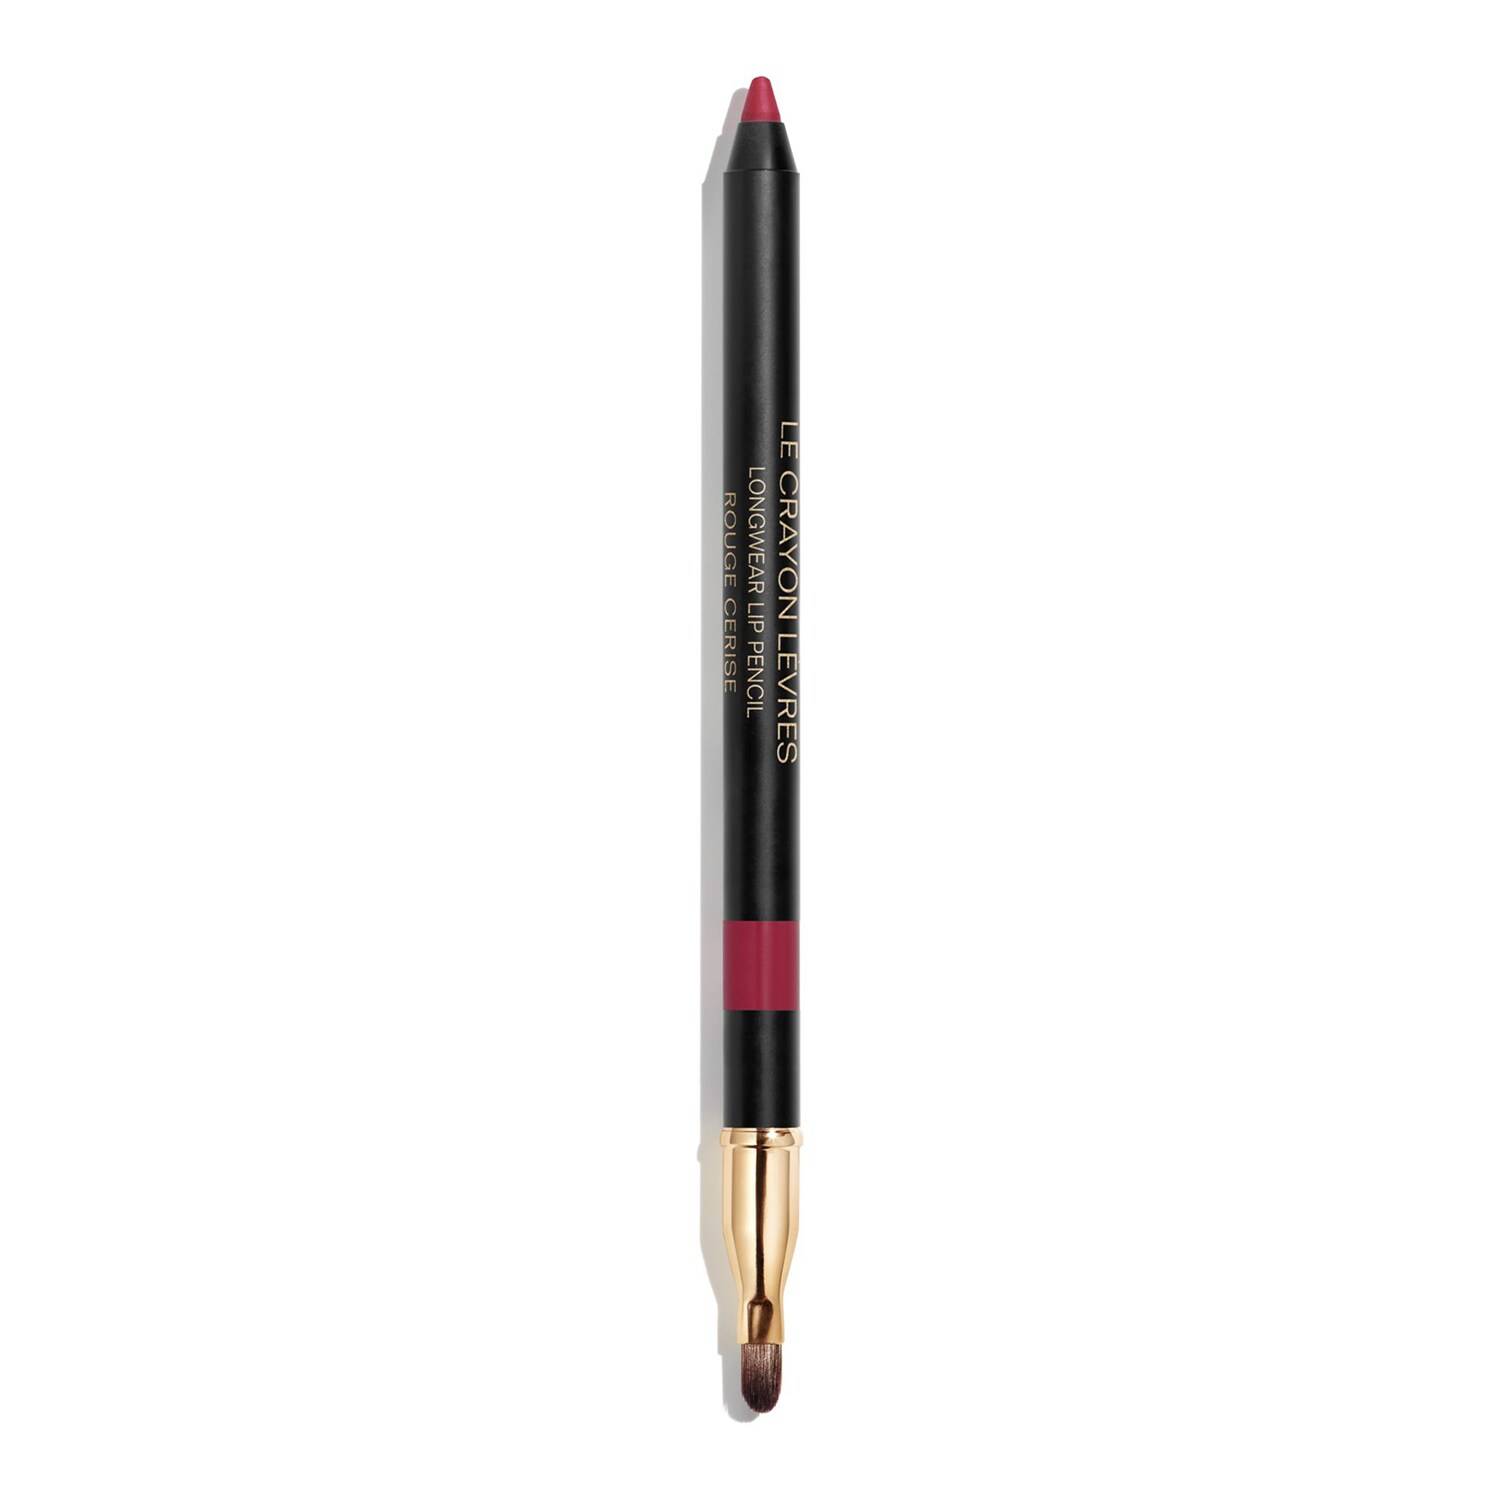 Chanel Le Crayon Levres - Longwear Lip Pencil 178 Rouge Cerise